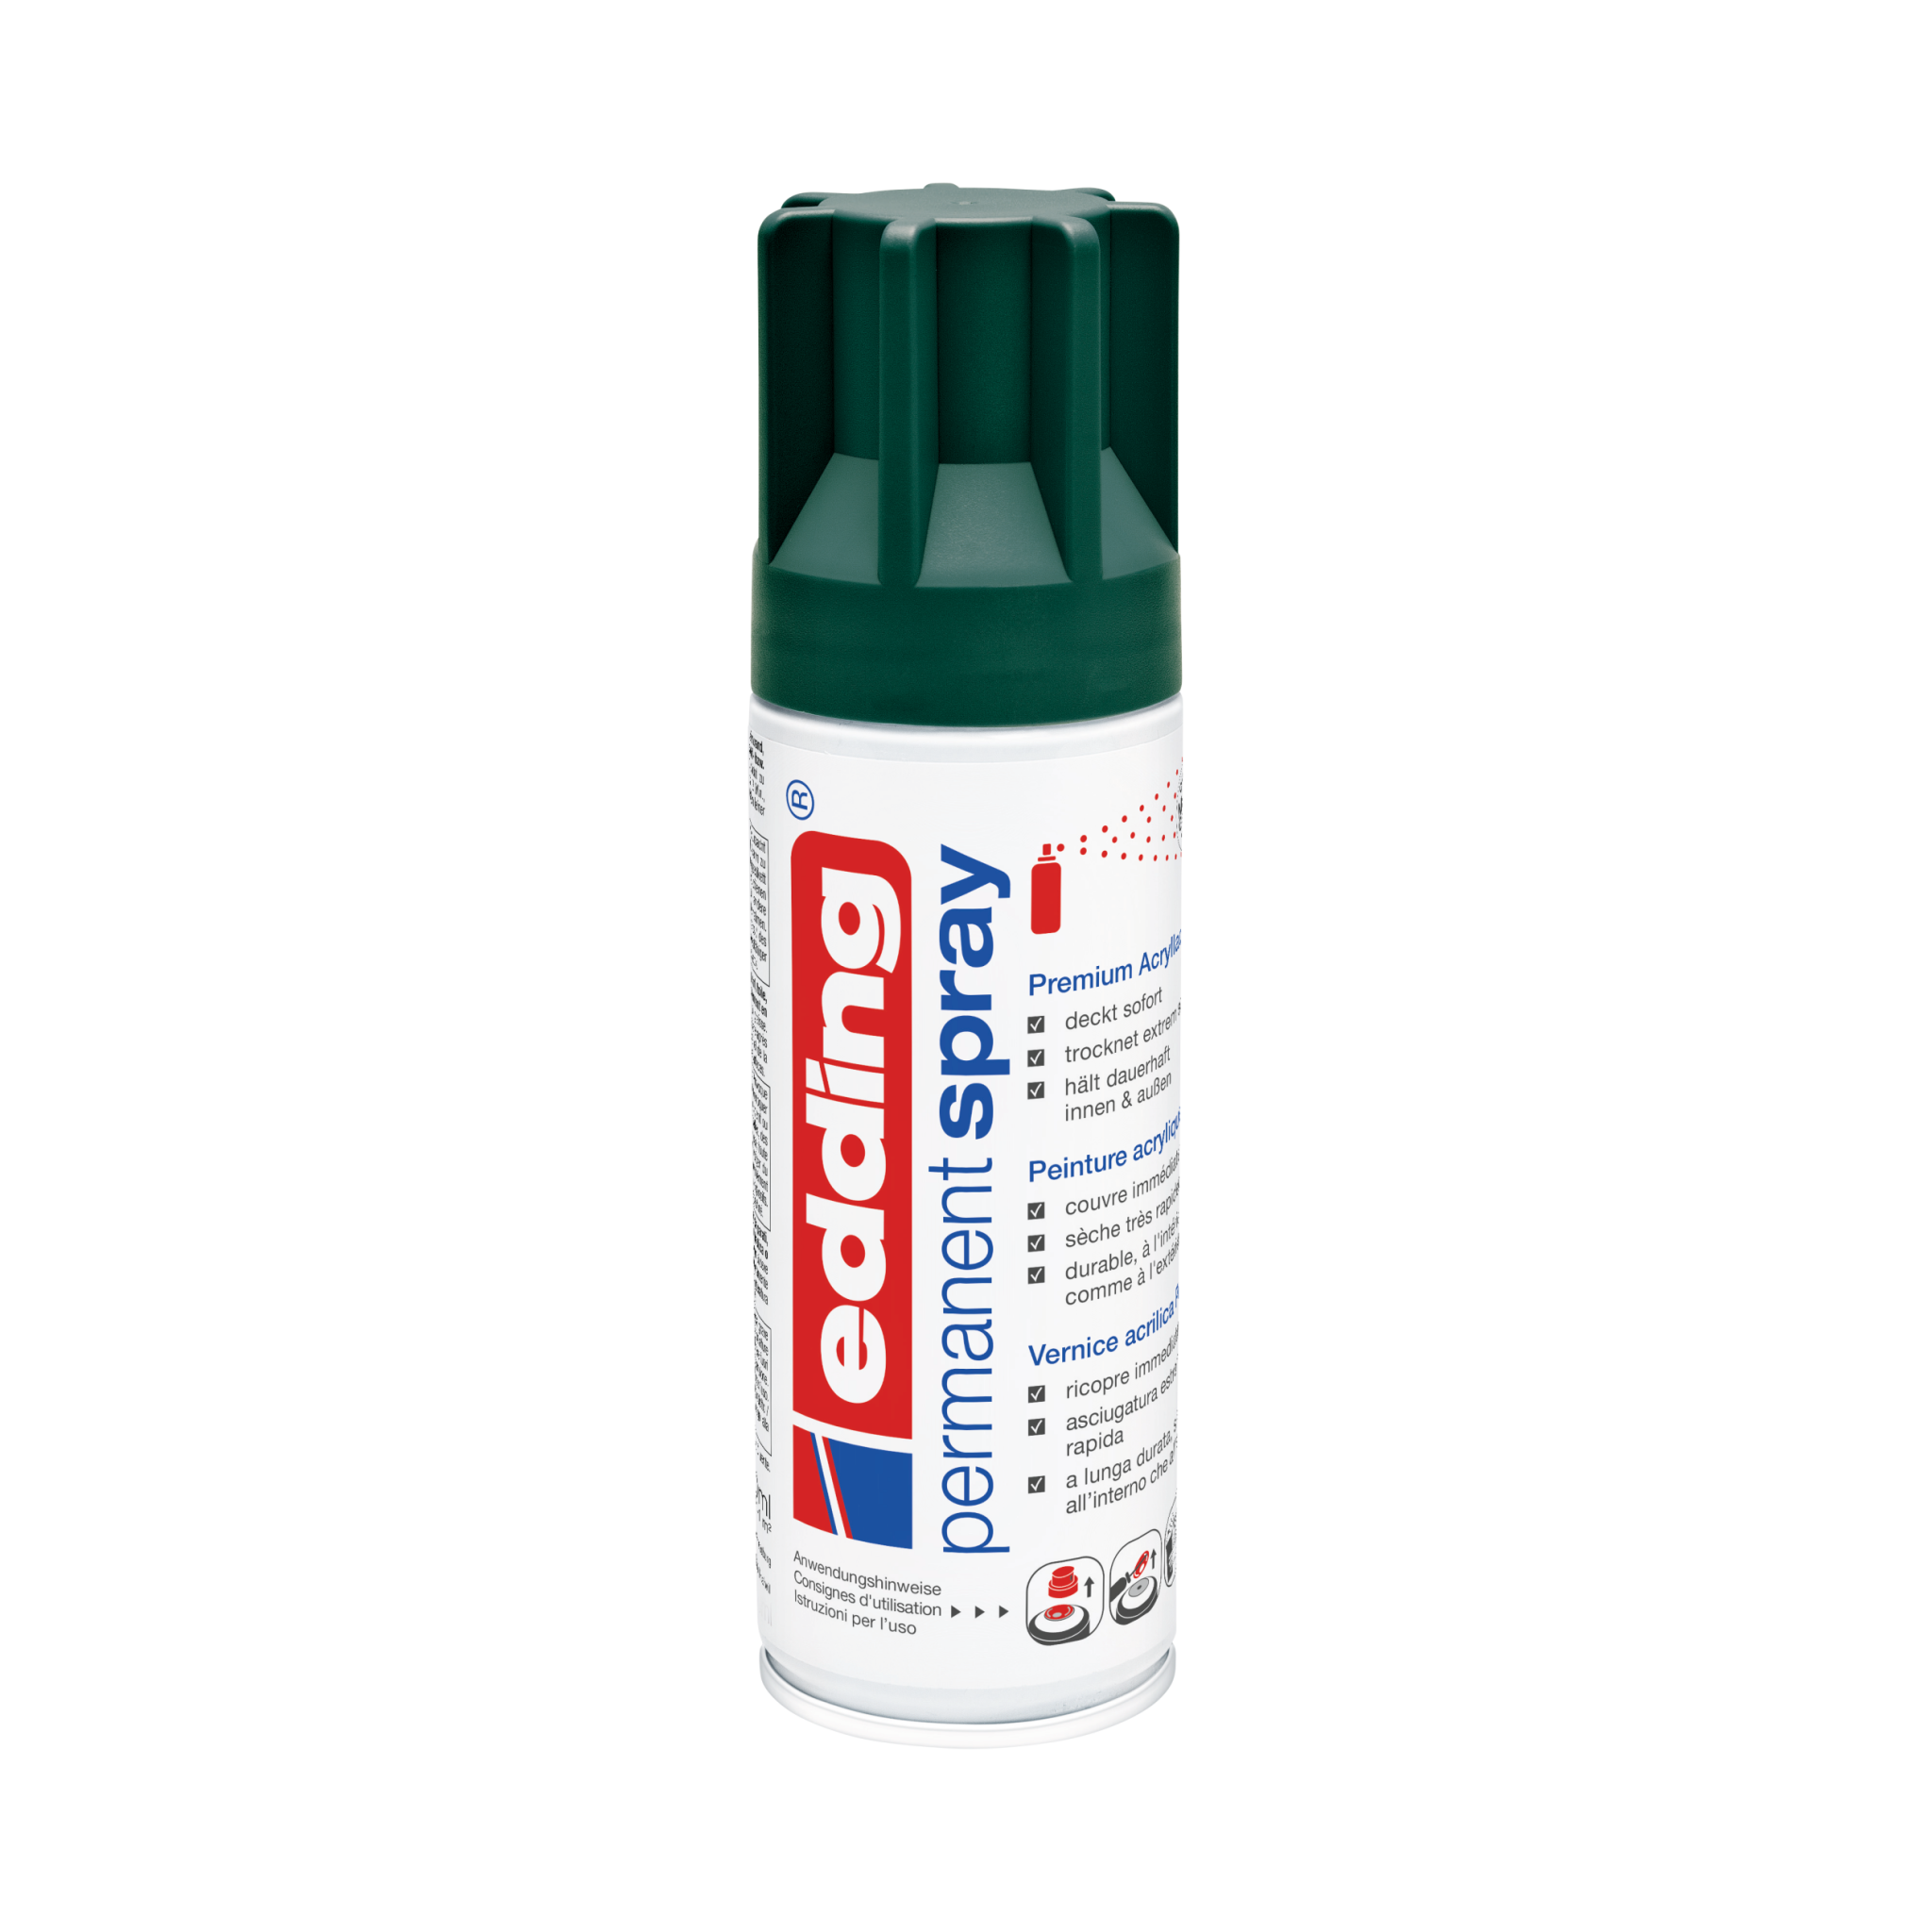 Eine Dose edding 5200 Permanentspray Acryllack Neon & Kräftige Farben-Sprühfarbe in Grün, konzipiert für die Anwendung auf verschiedenen Oberflächen mit einem deutschsprachigen Etikett.